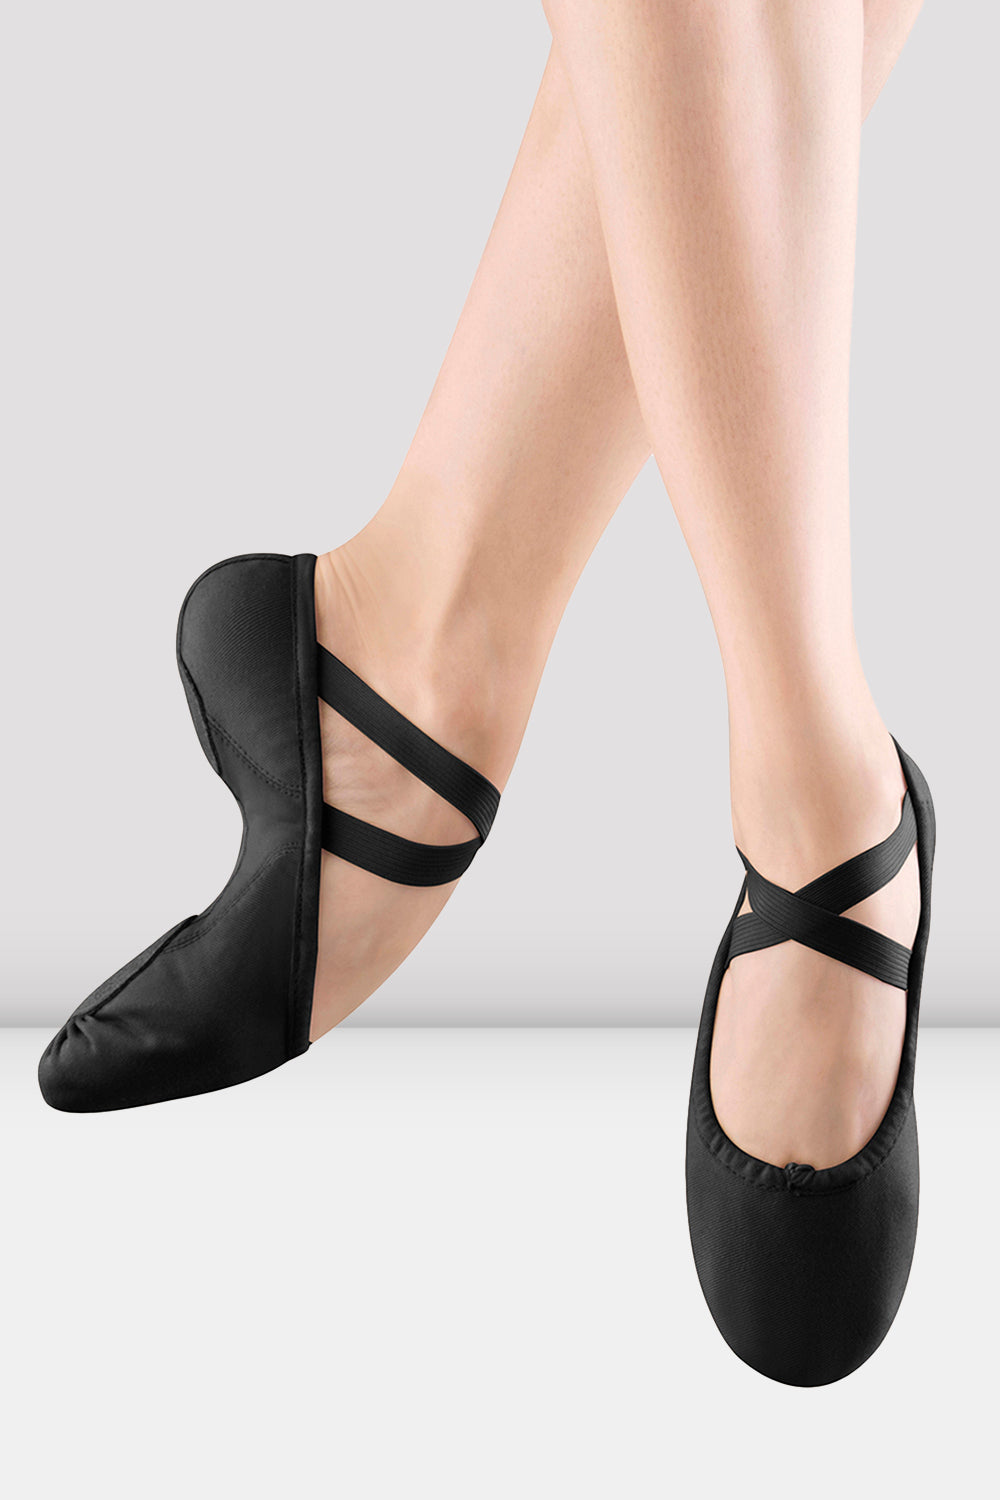 BLOCH Ladies Proflex Canvas Ballet Shoes, Black Canvas